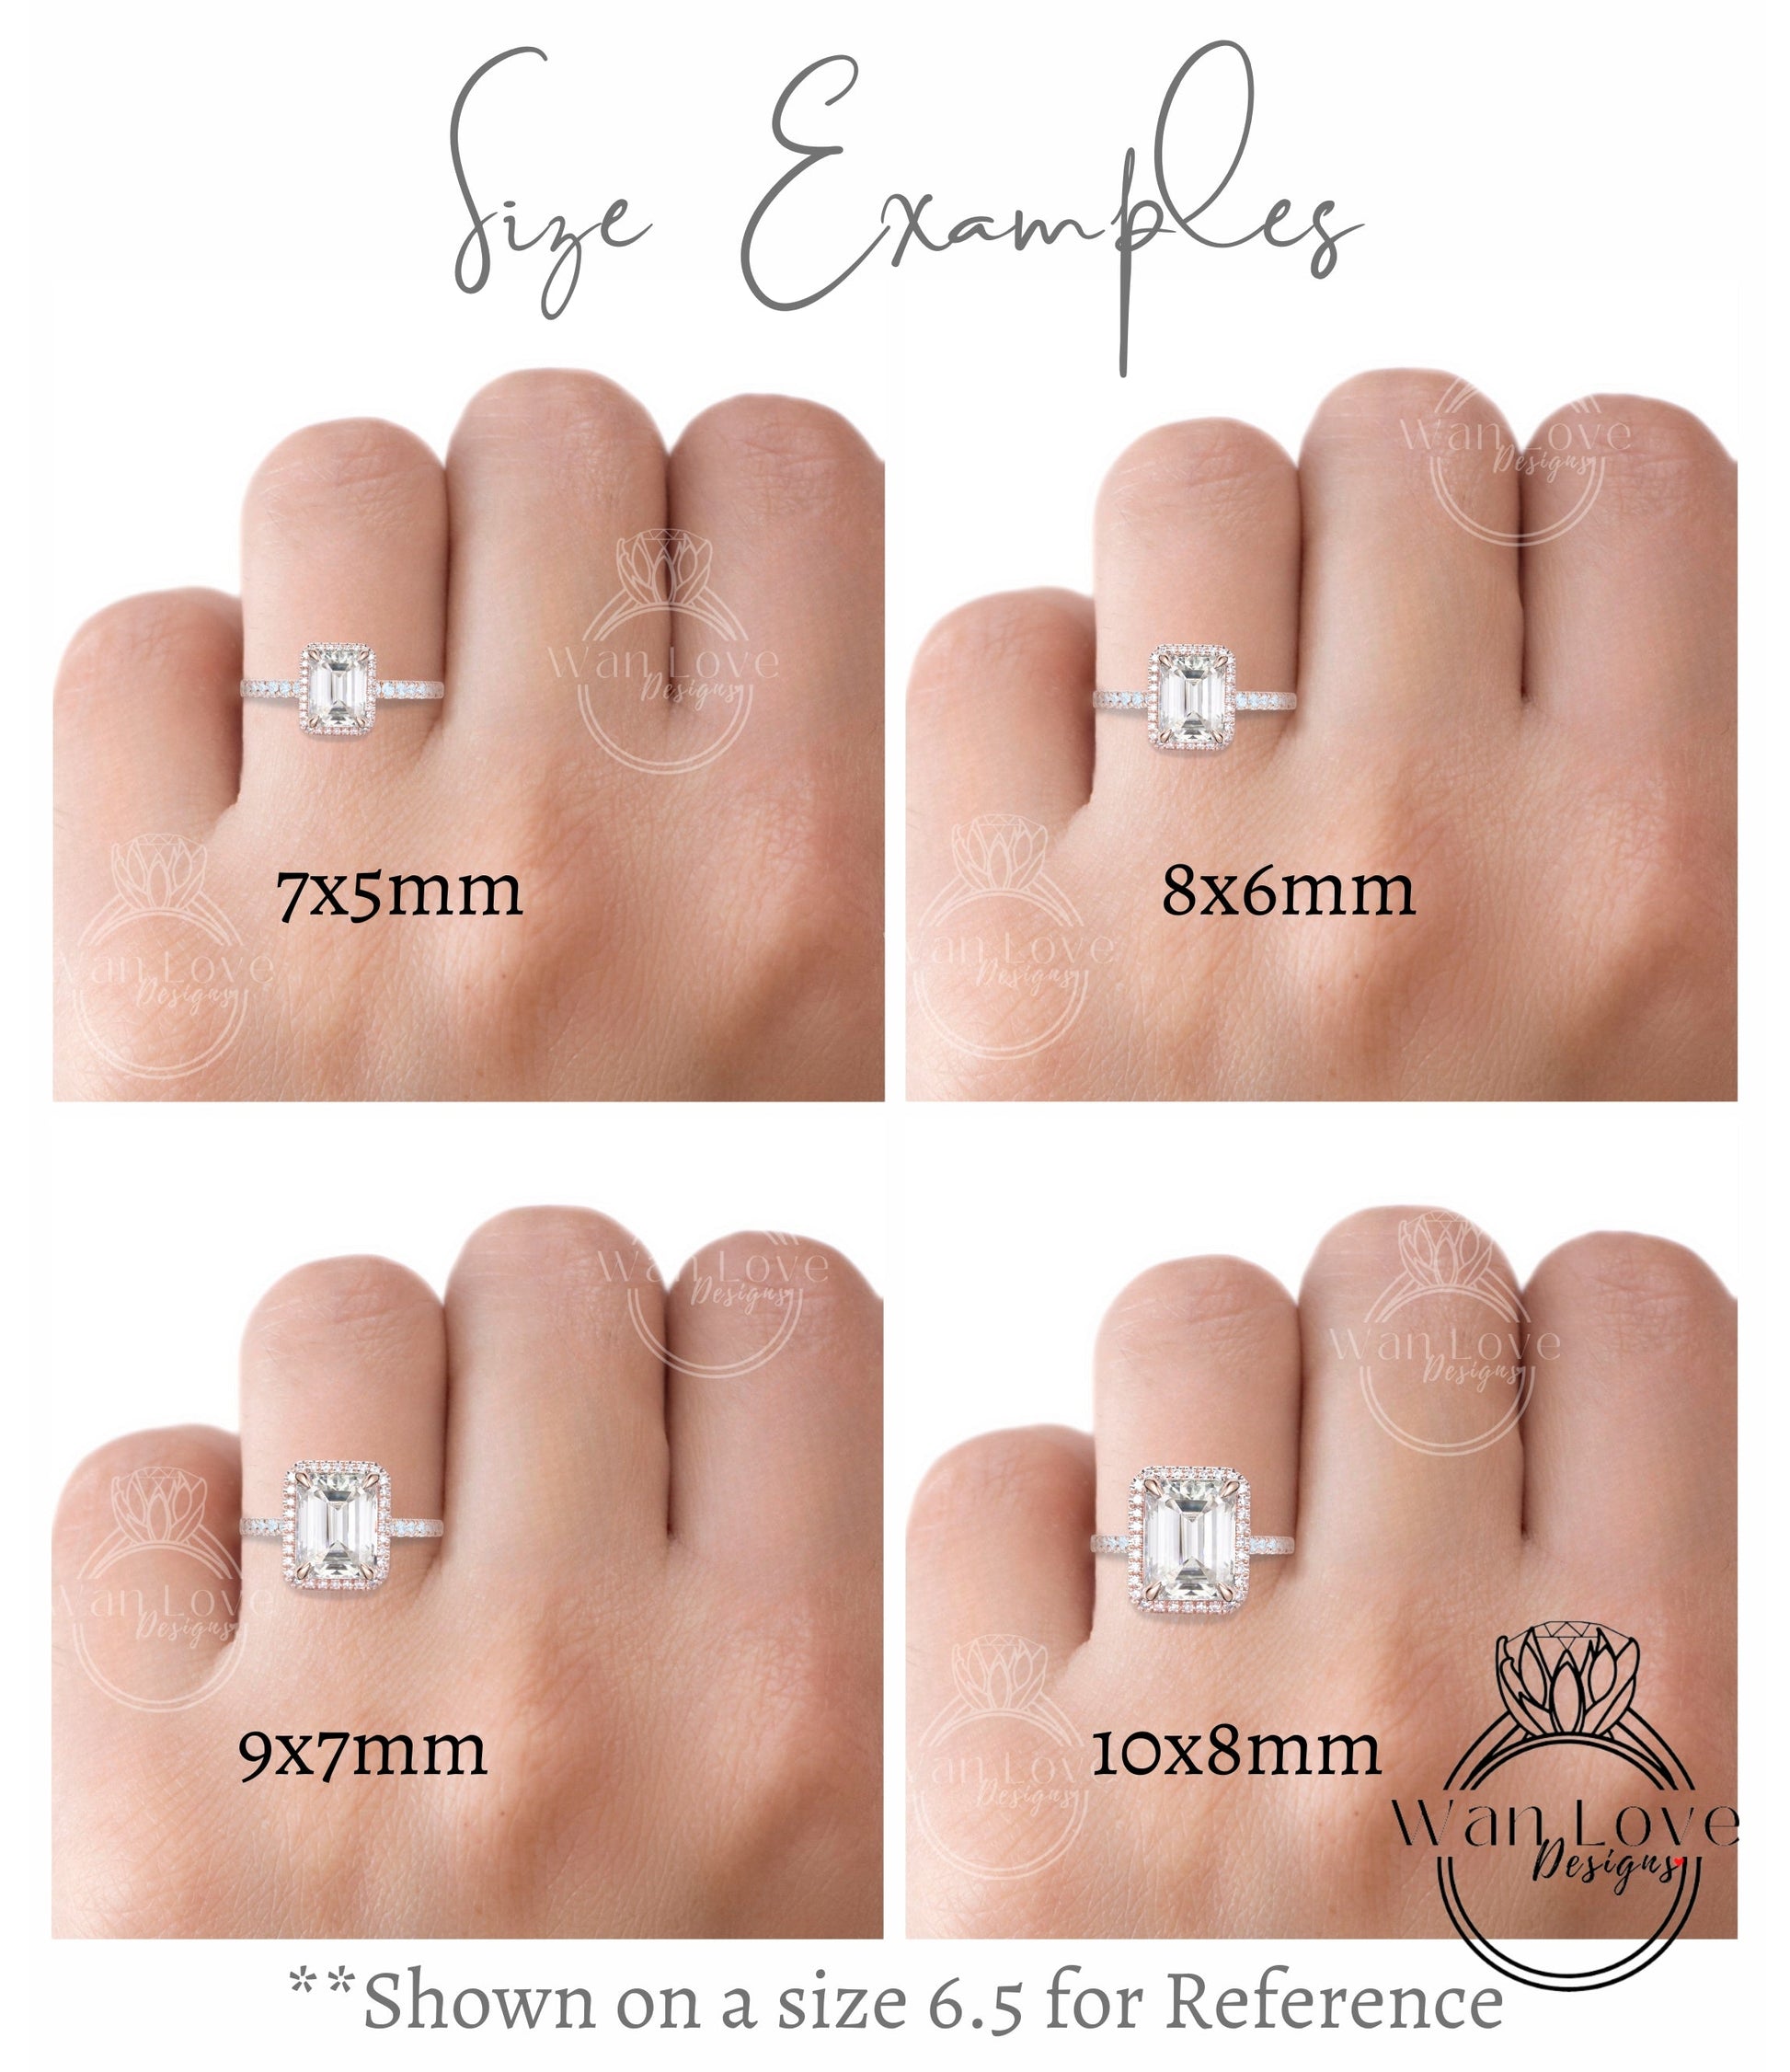 Art Deco Halo Teal Spinel & Diamond Ring, Milgrain Bezel Halo Ring, Spinel Moissanite Ring, Vintage Inspired Ring Wan Love Designs